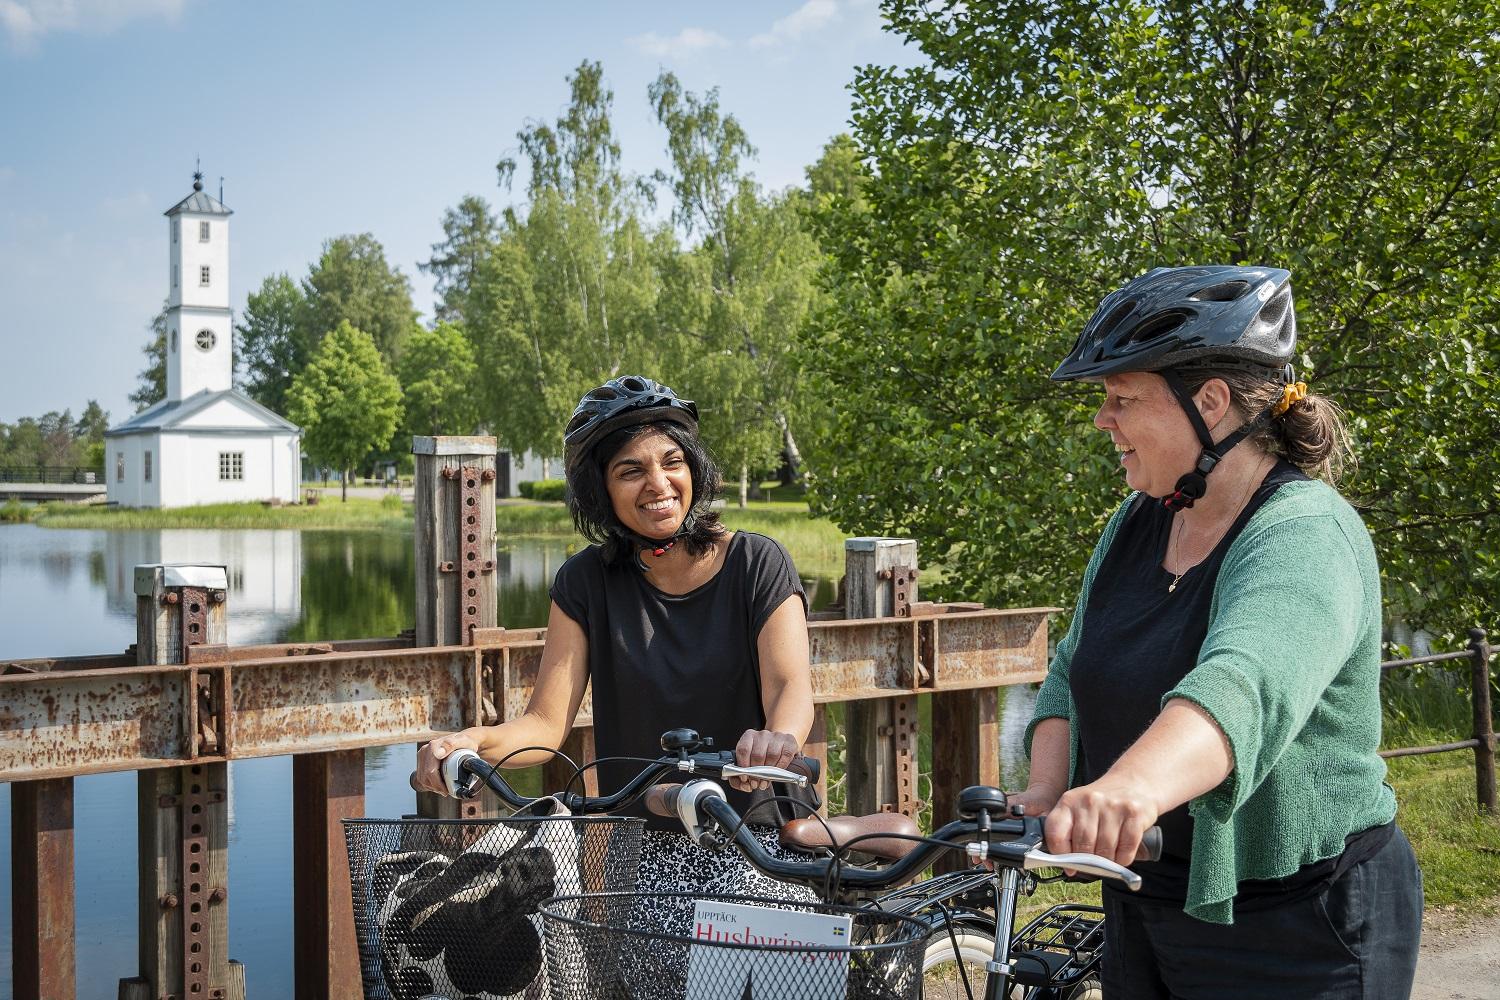 Zwei Frauen mit Fahrrädern stehen auf einer Brücke mit einer kleinen Kirche im Hintergrund.